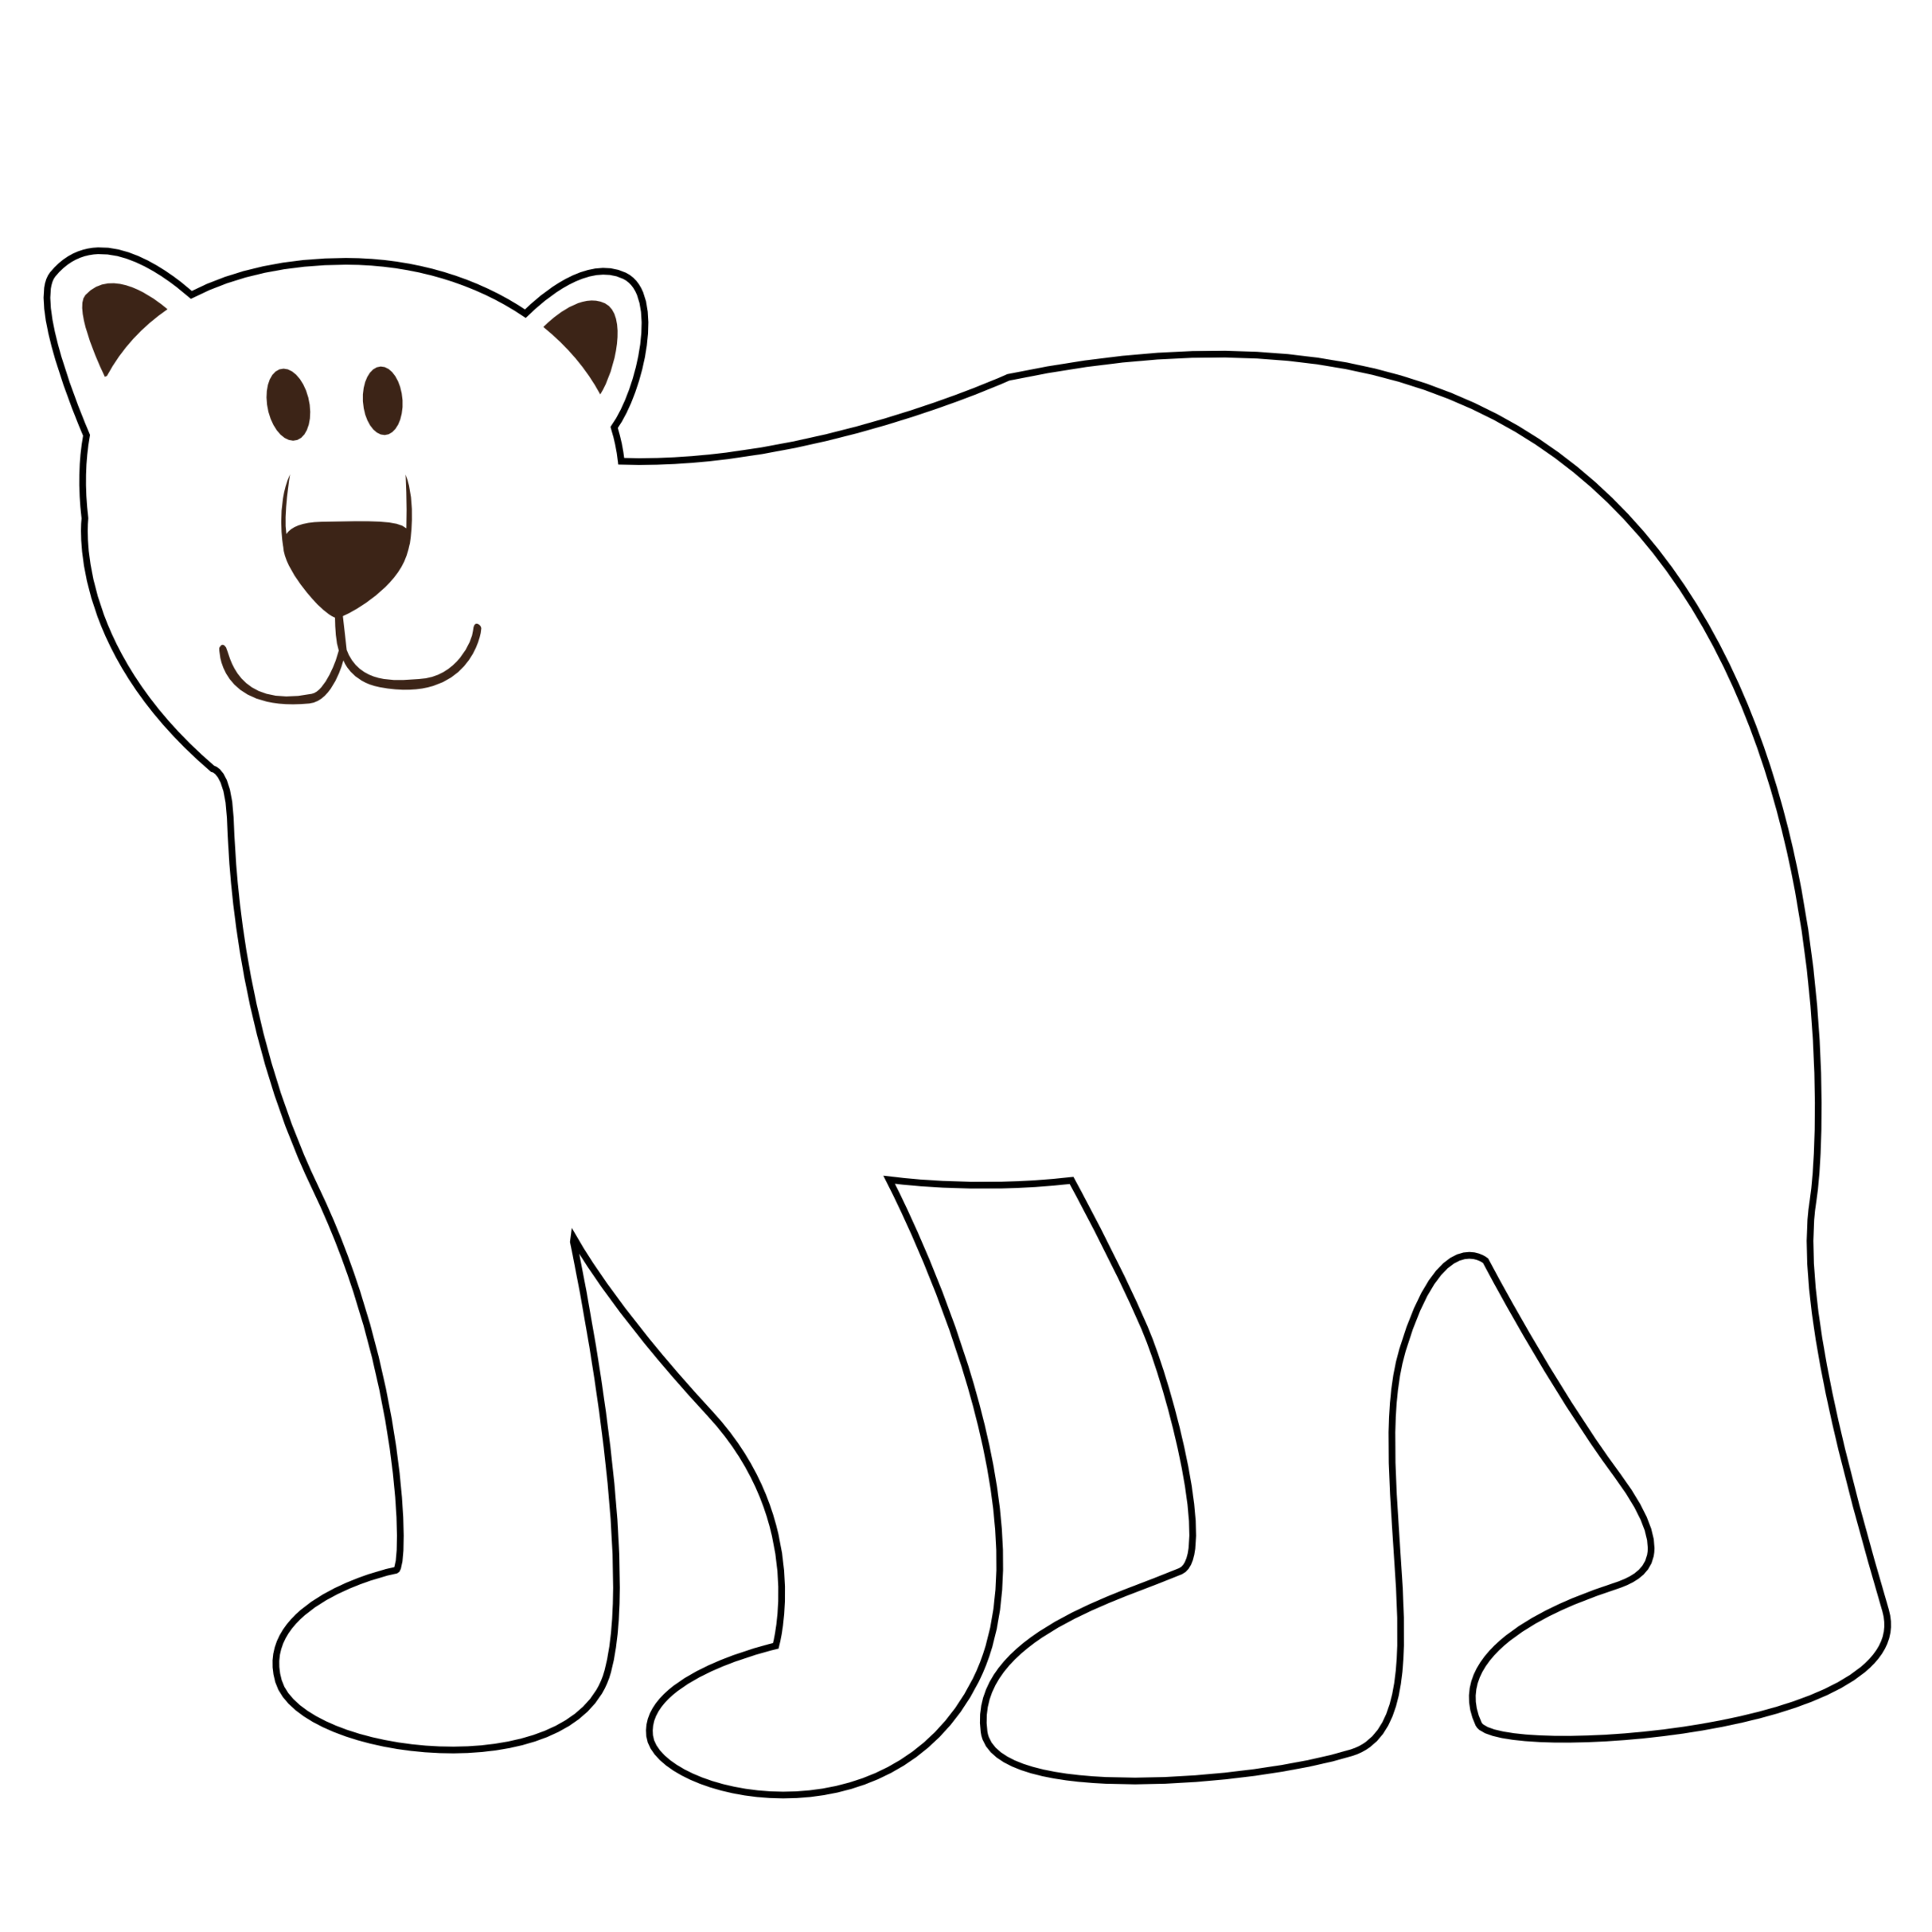 Polar bears 